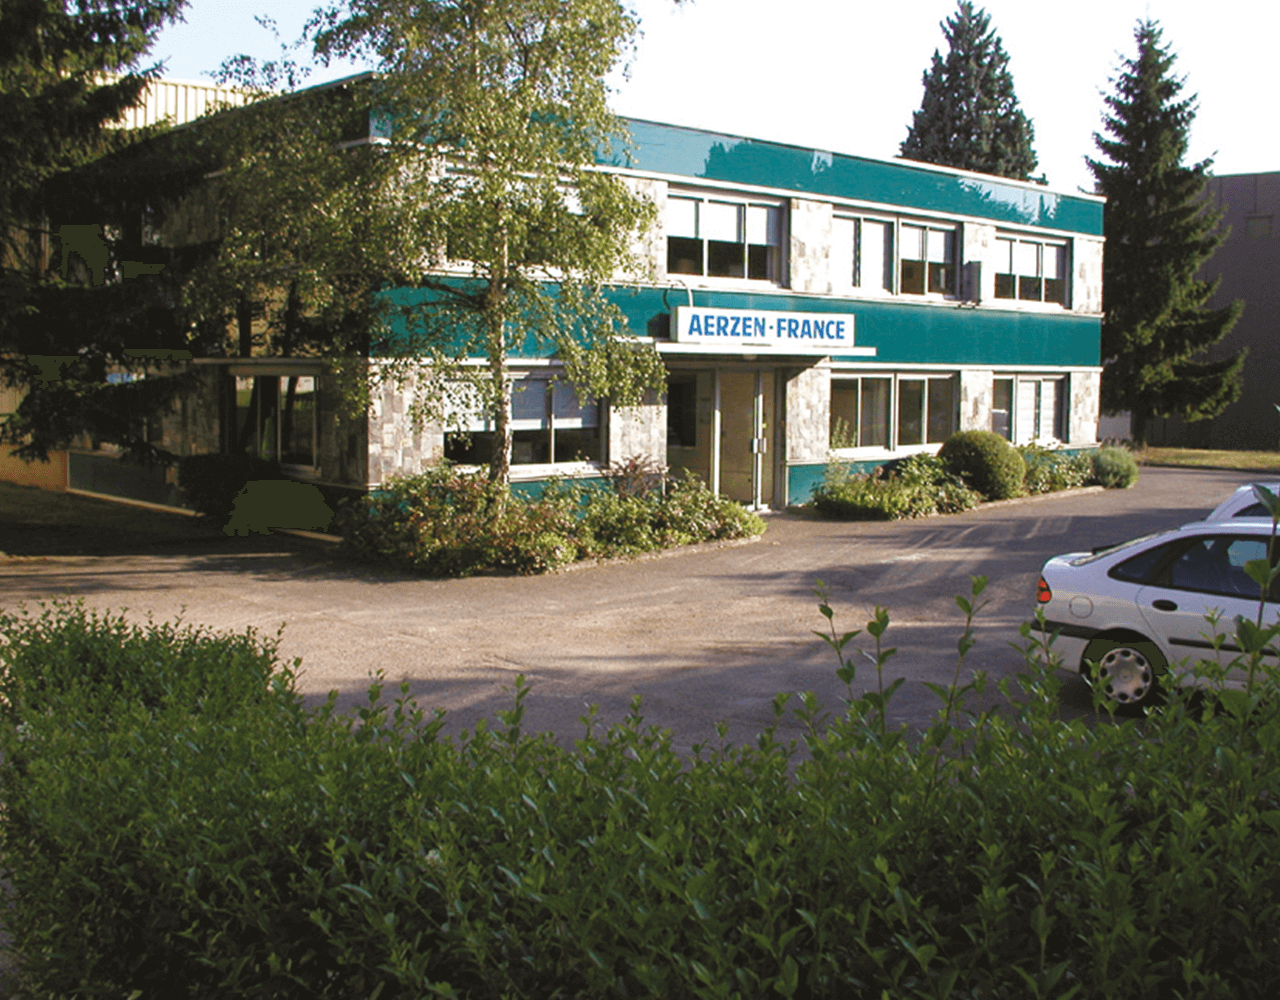 Foto dell'edificio del 1969 in cui fu fondata la prima filiale estera di AERZEN